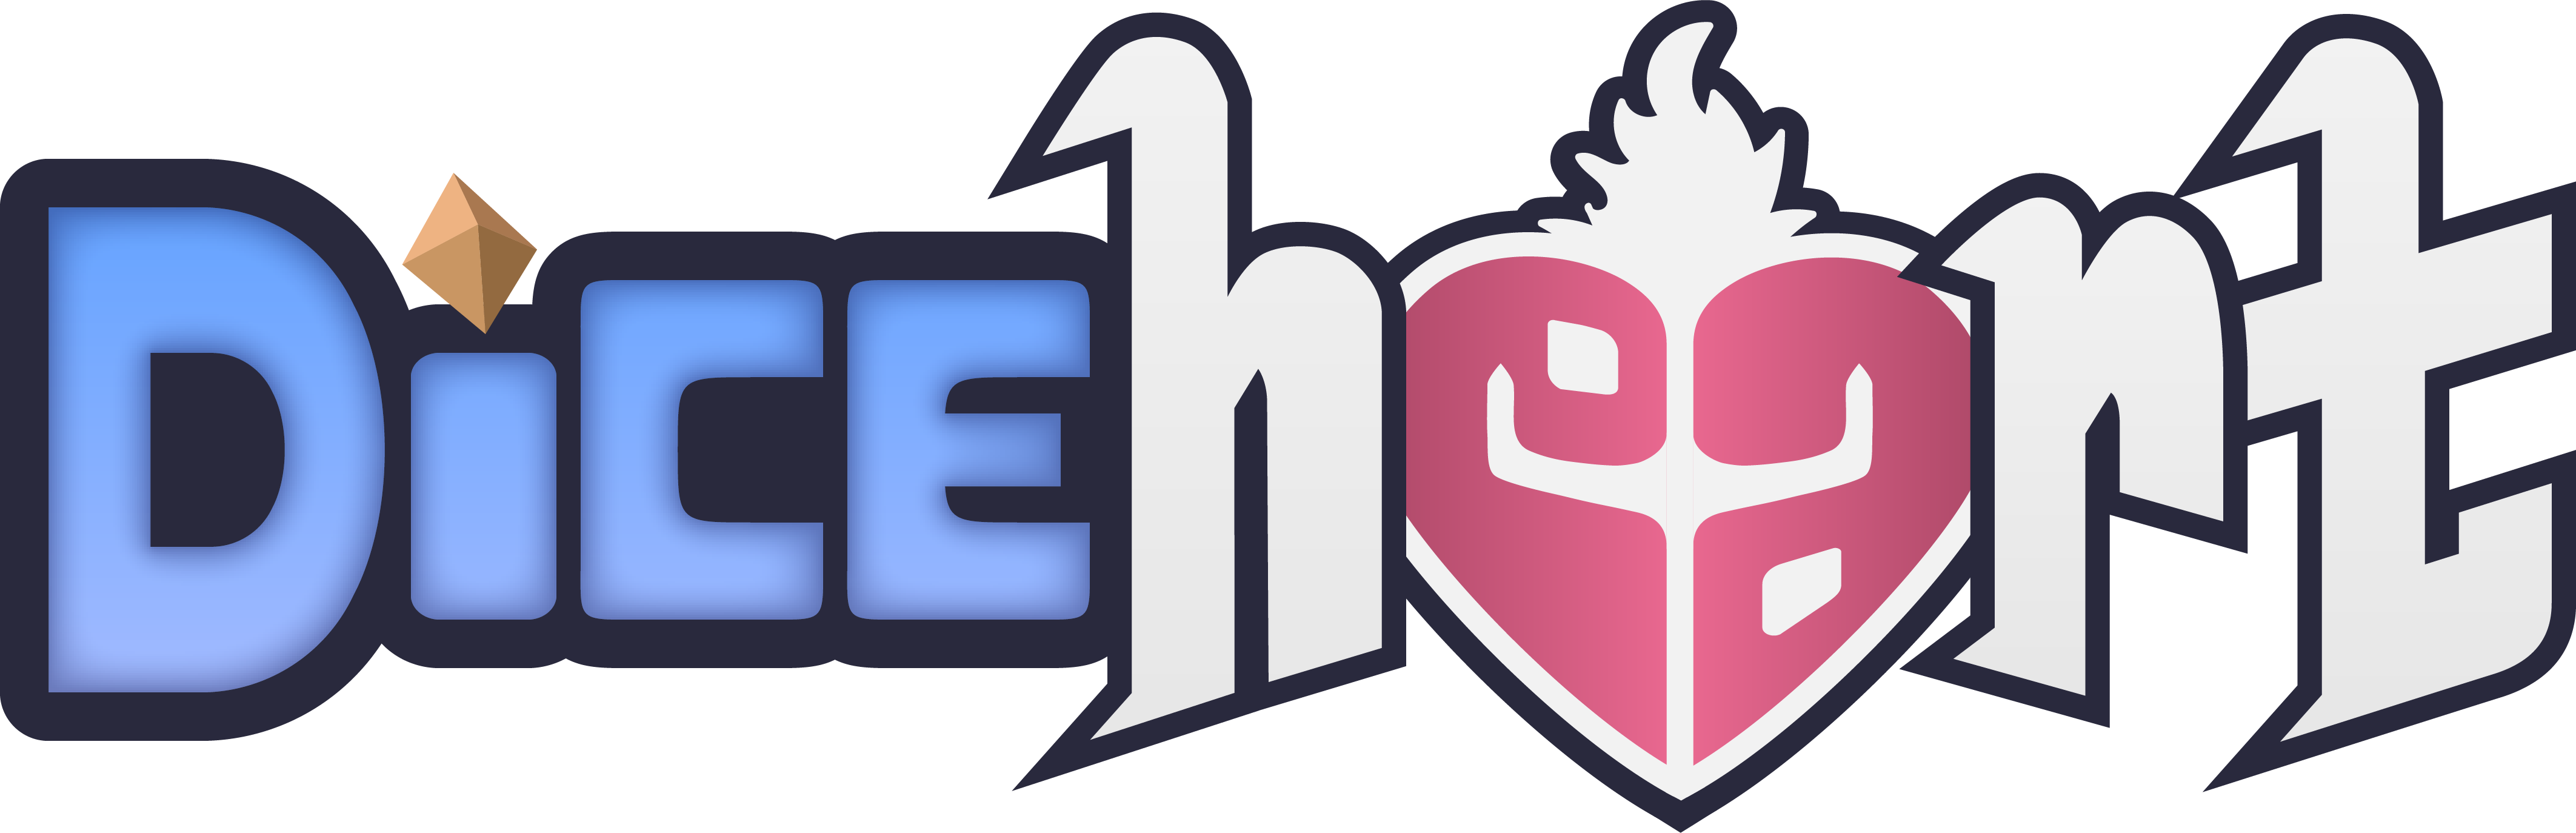 Diceheart logo